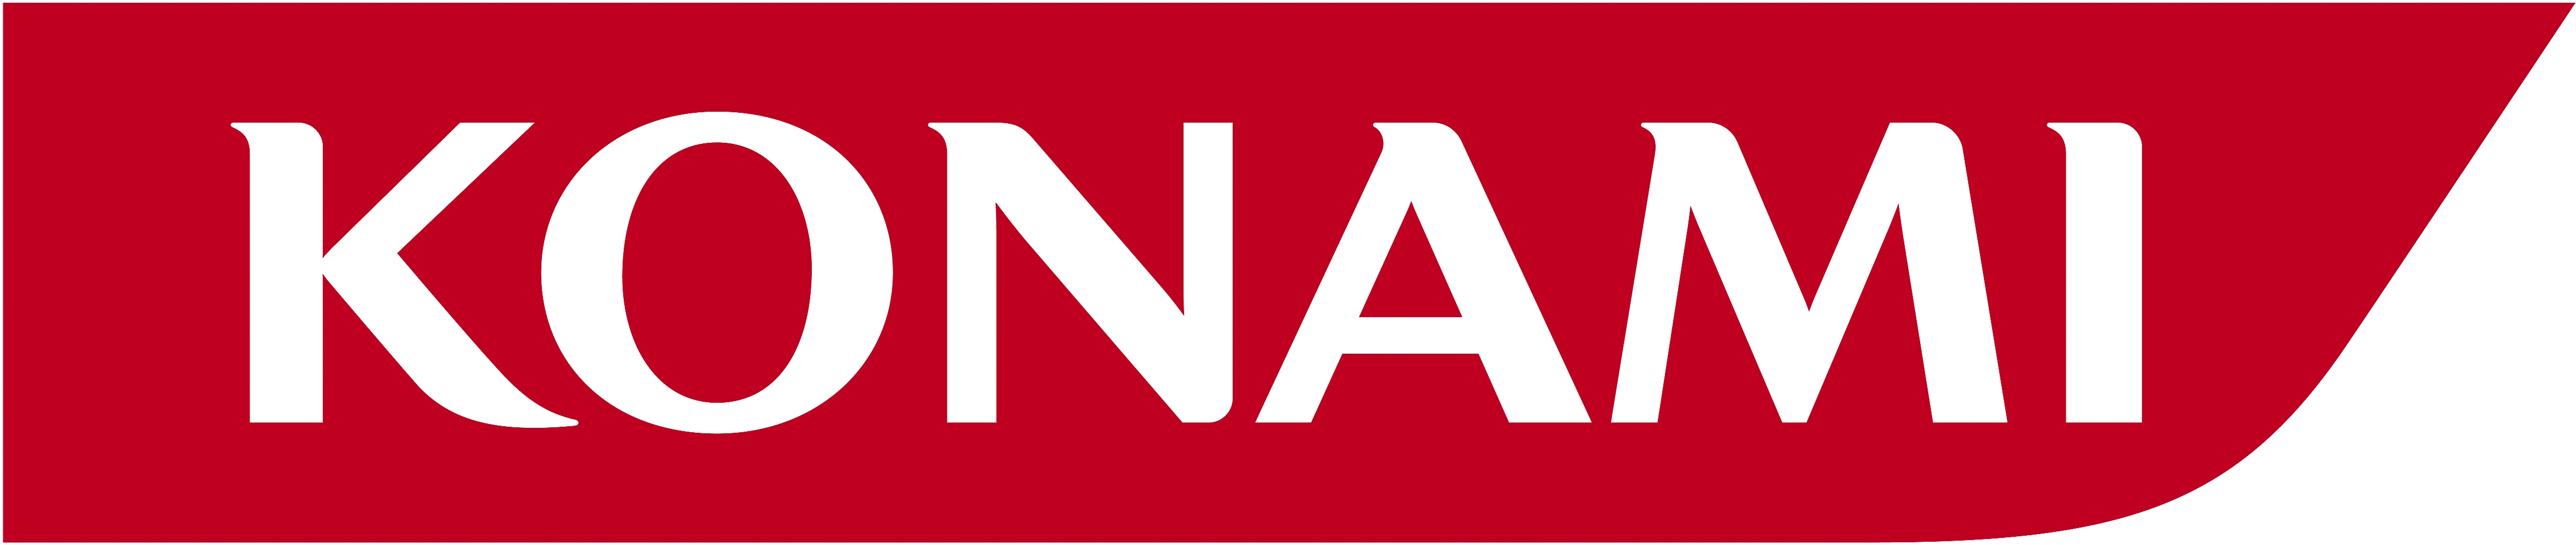 Konami Logo Image Download Logo Logowiki Net